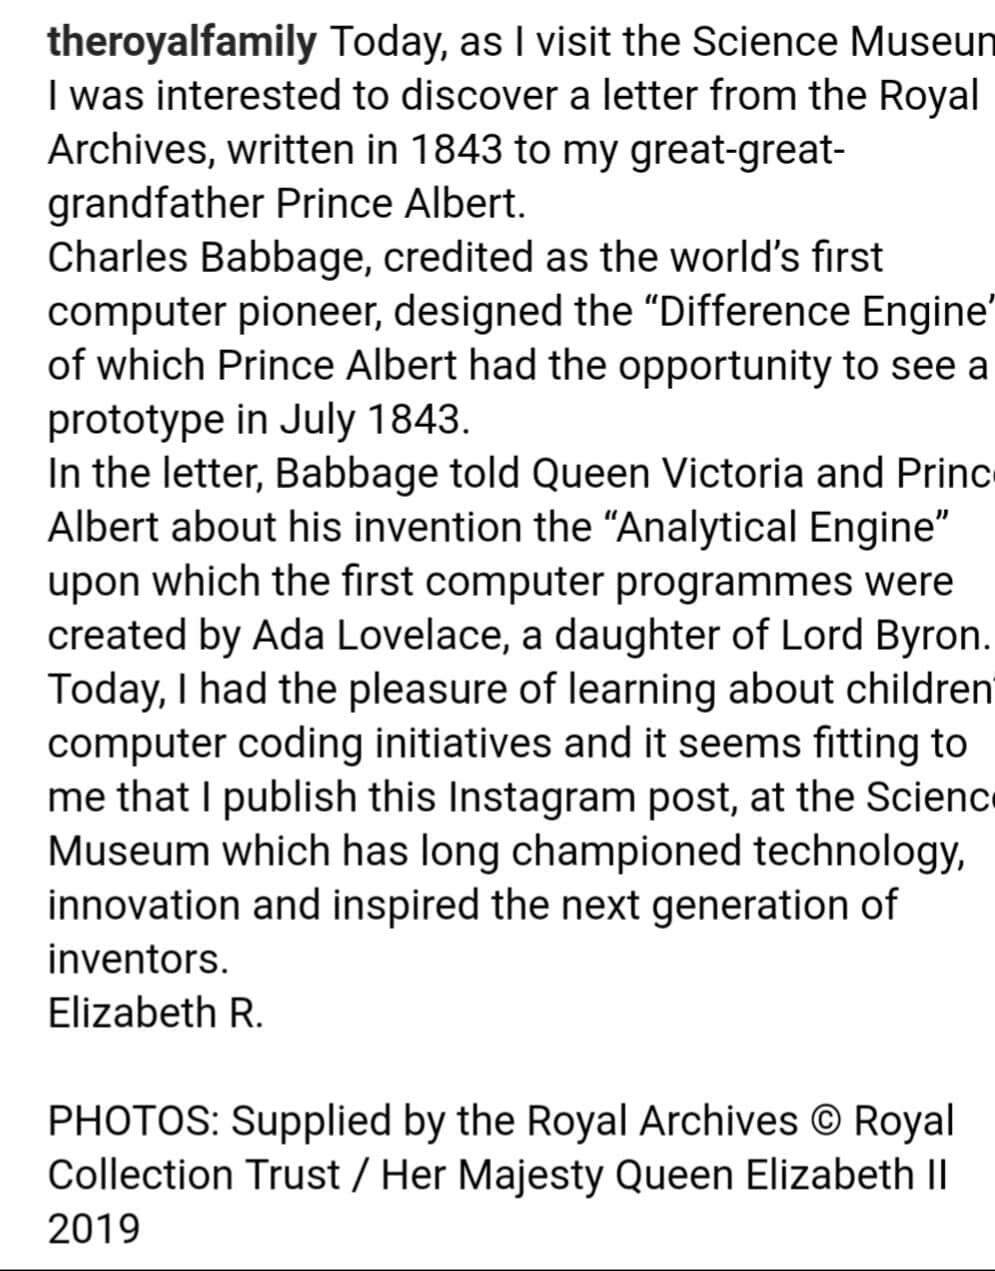 Rainha Elizabeth II  posta no Instagram pela primeira vez.